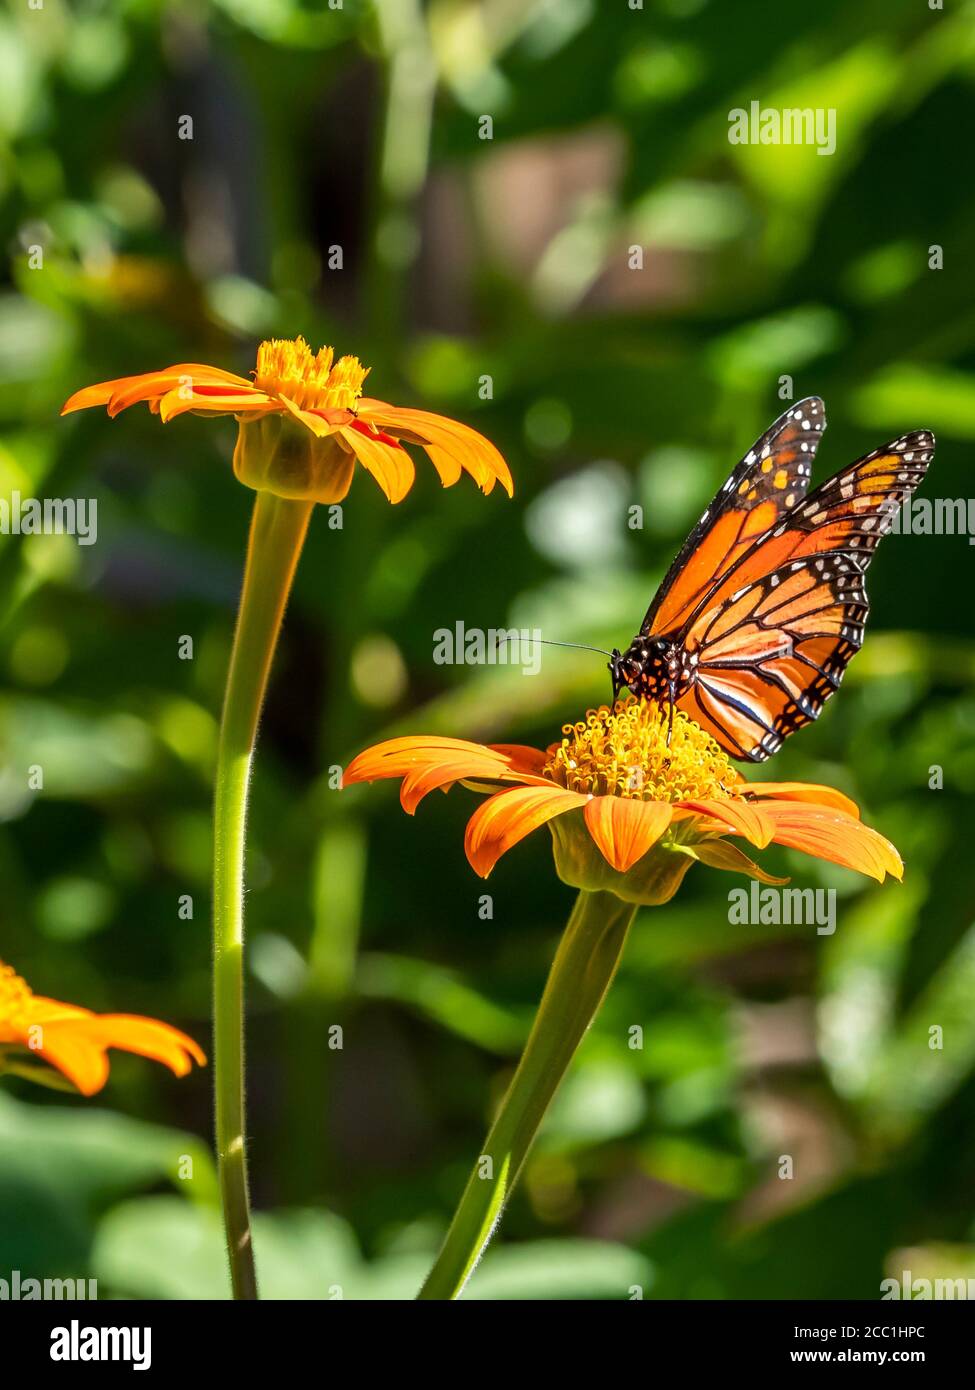 Gros plan d'un papillon monarque, Danaus plexippus, sur une fleur Banque D'Images